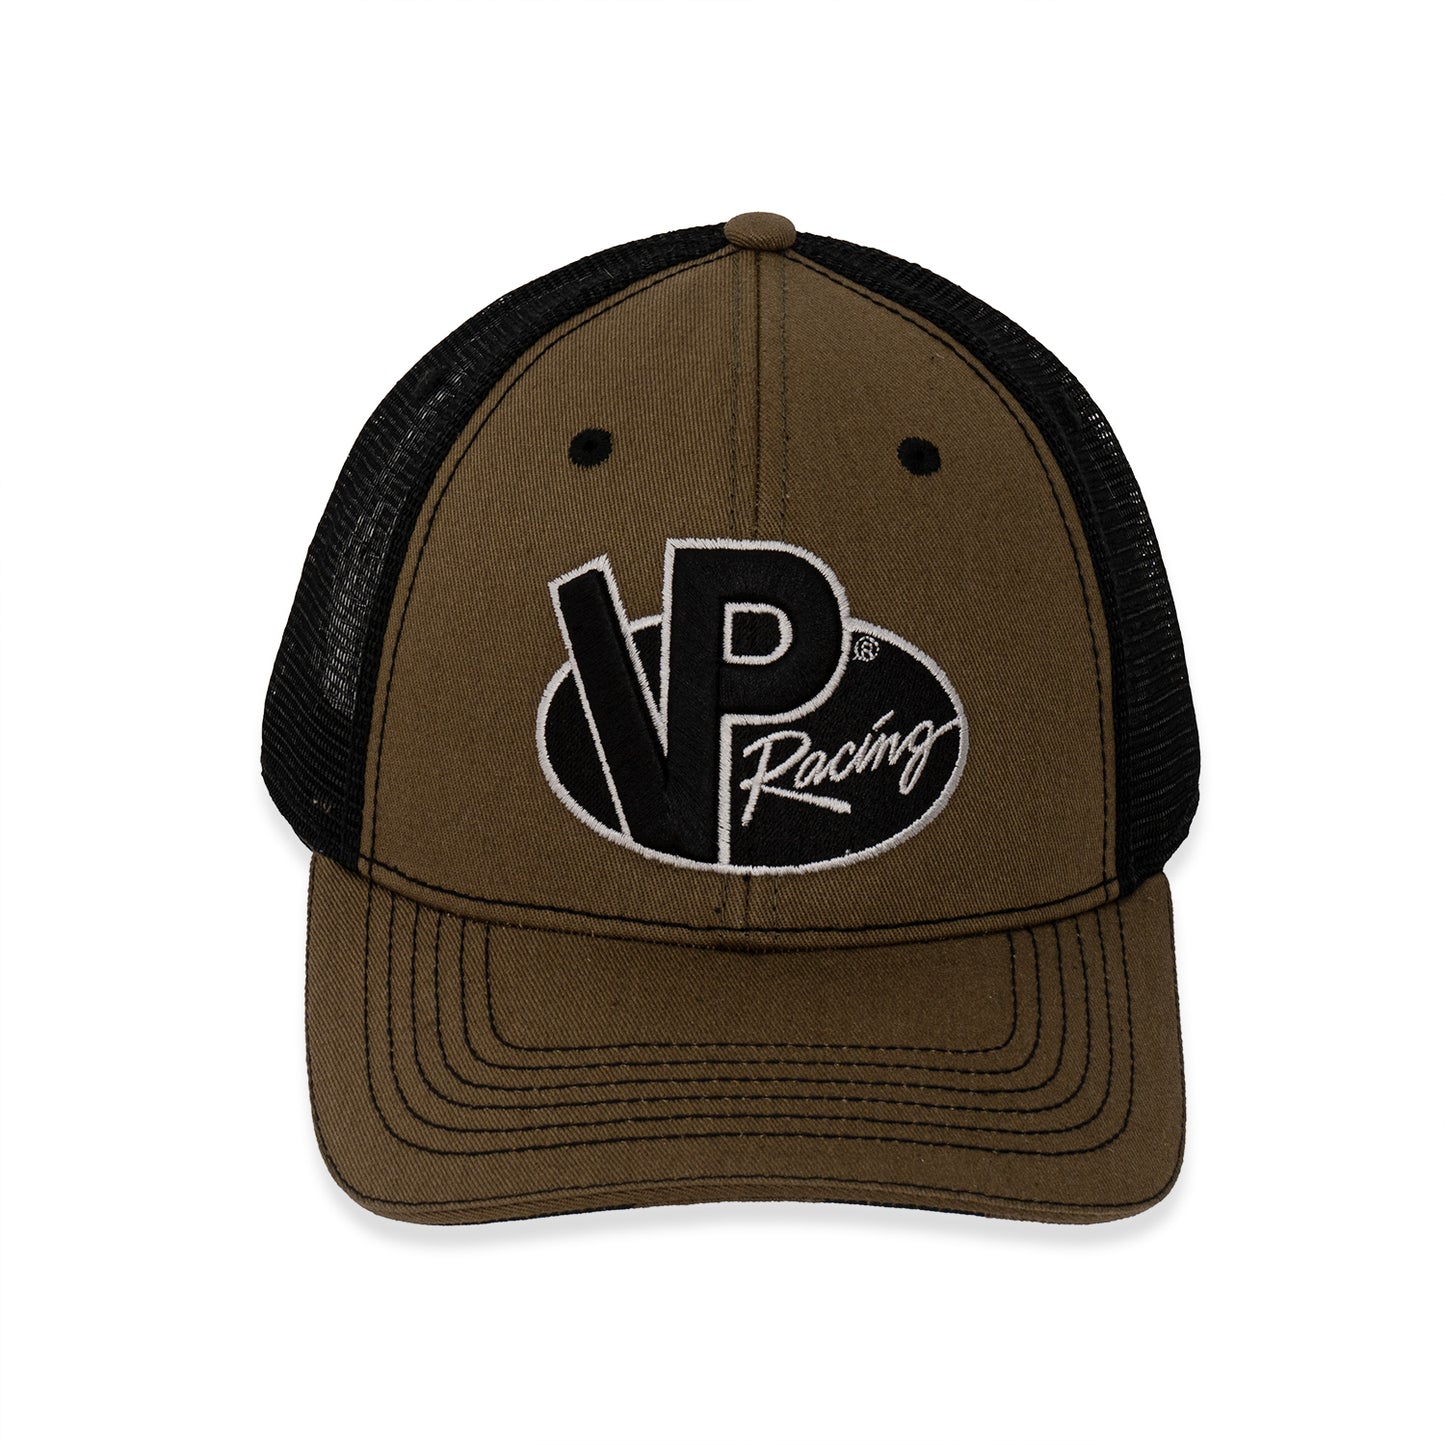 VP Racing Trucker Hat - Olive/Black